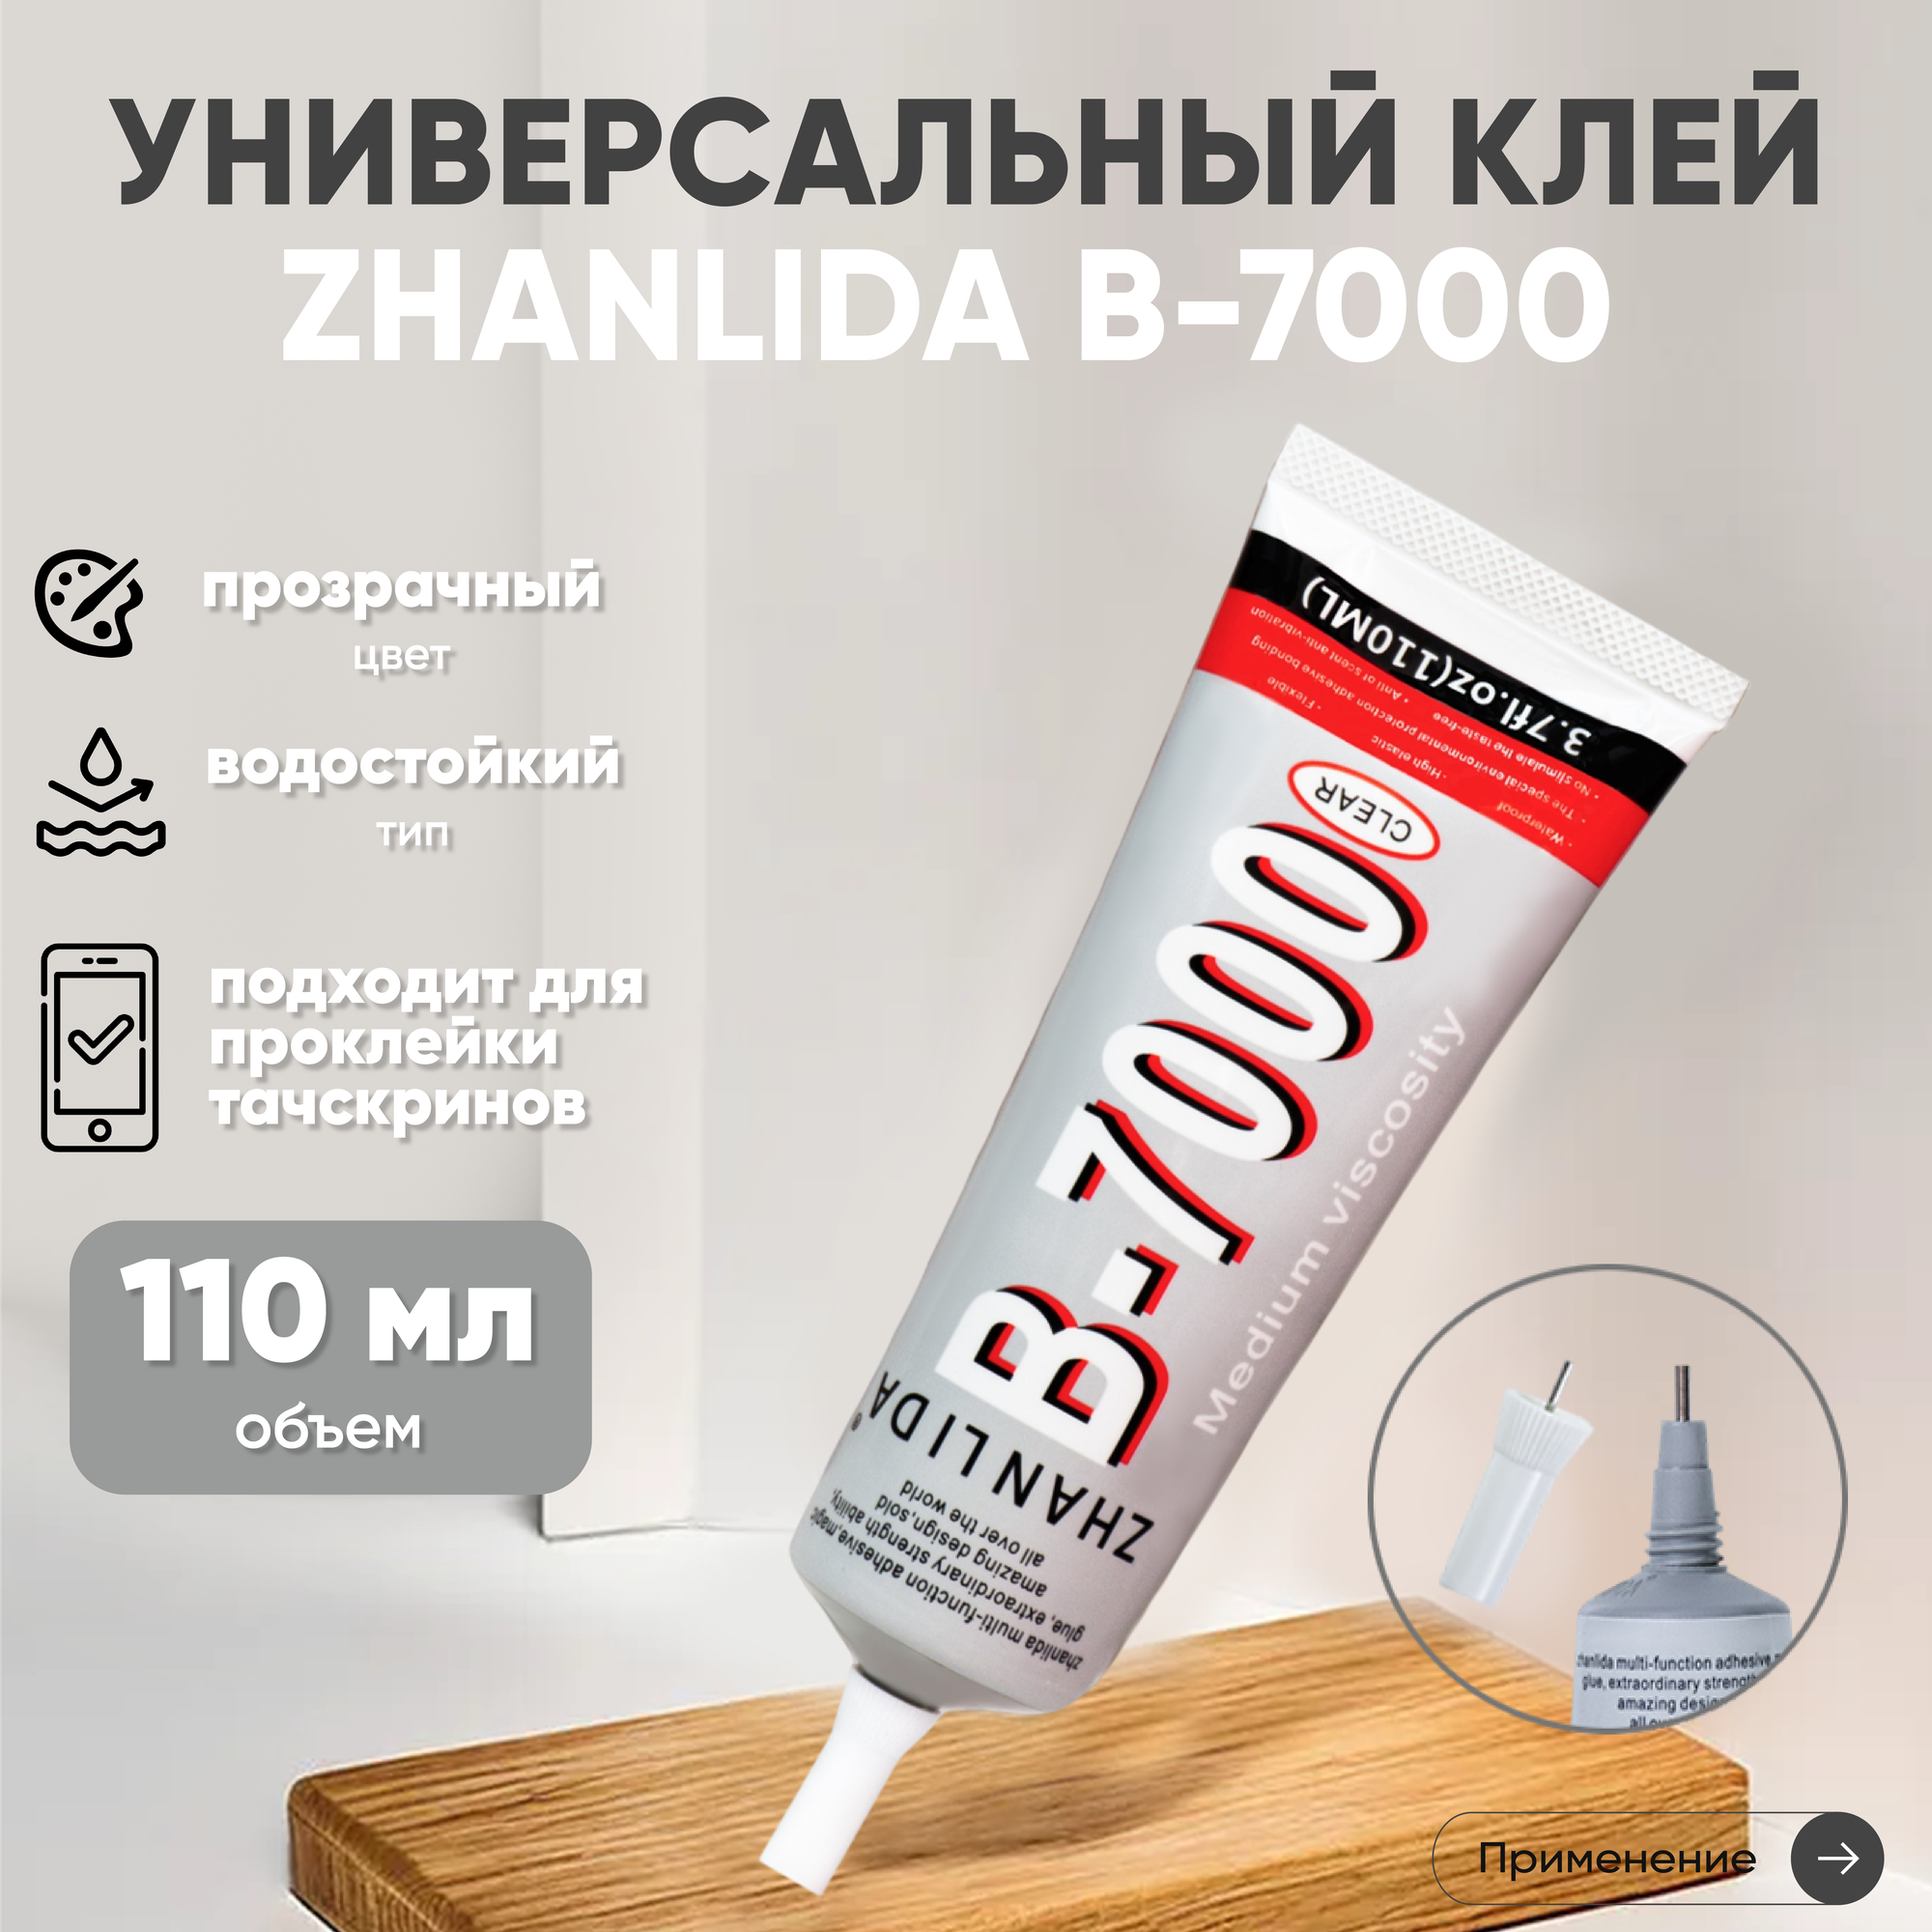 Прозрачный клей Zhanlida B-7000 (B7000, В7000, B-7000) для ремонта телефонов и страз, 110 мл.